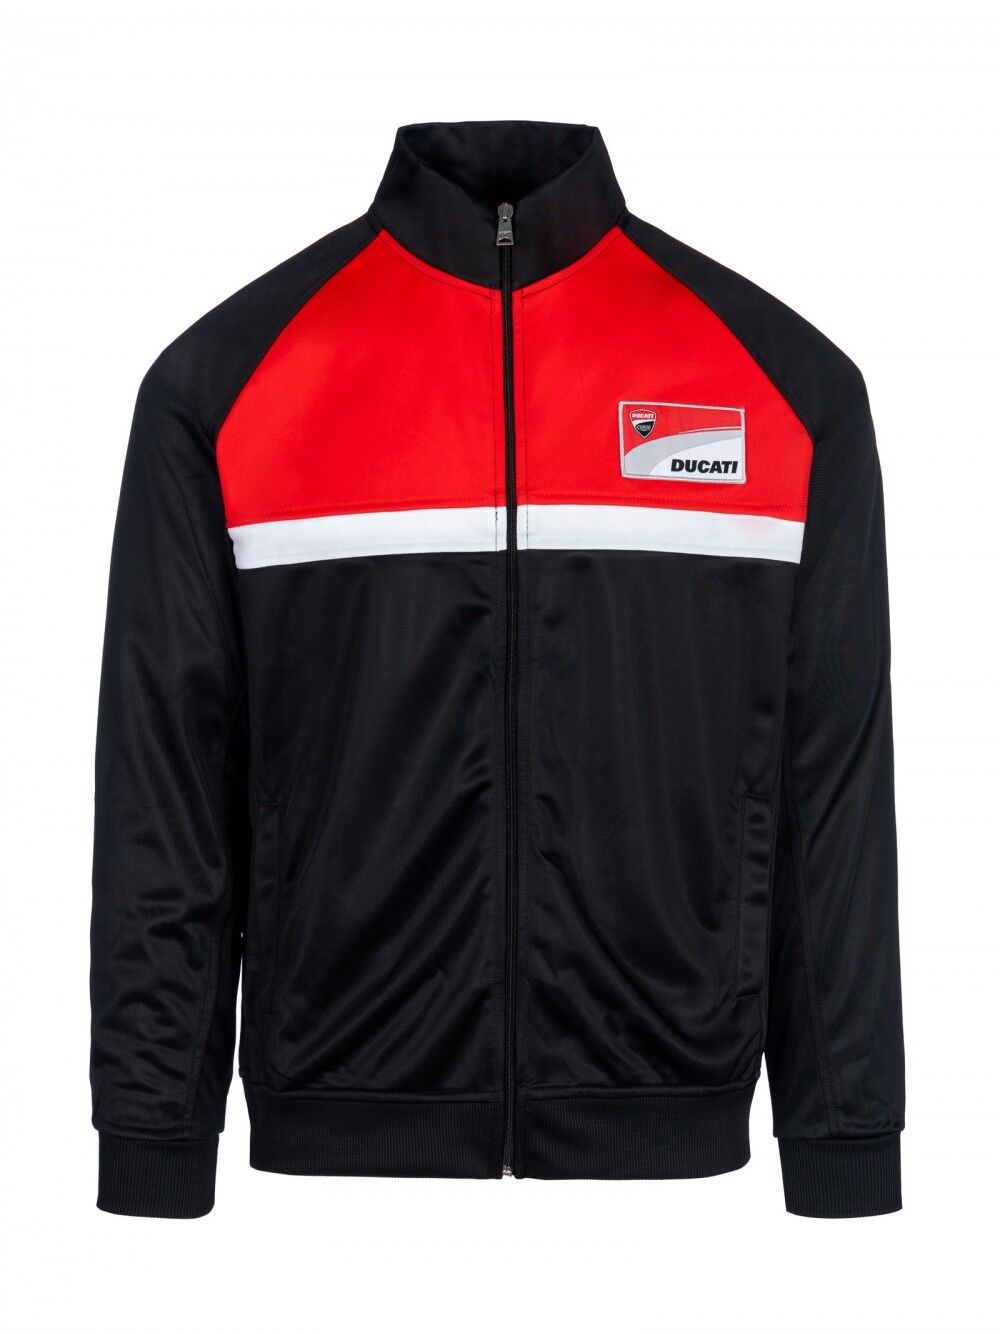 Ducati Corse Official Contrast Yoke Sweatshirt Jacket - 18 26002